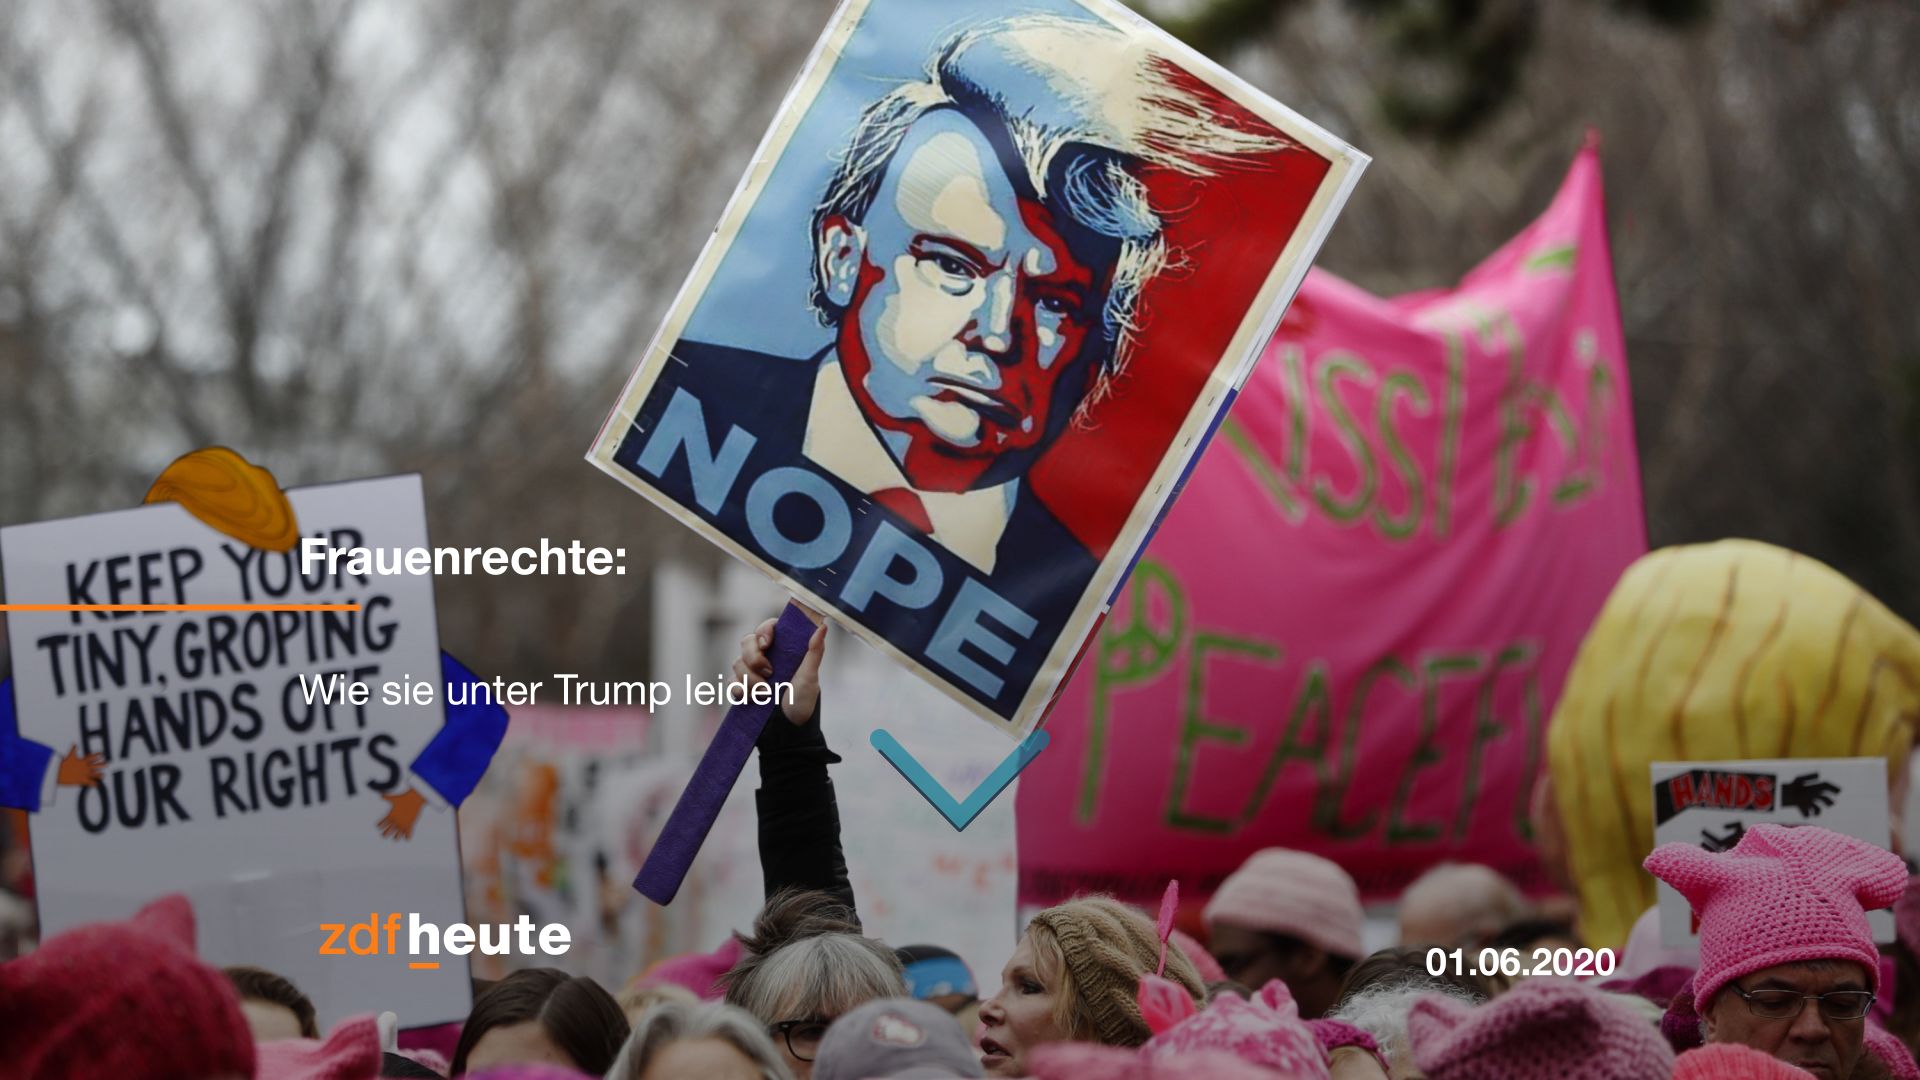 Bild von einer Frauenrechtsdemonstration mit einem Plakat auf dem Trump und "Nope" steht